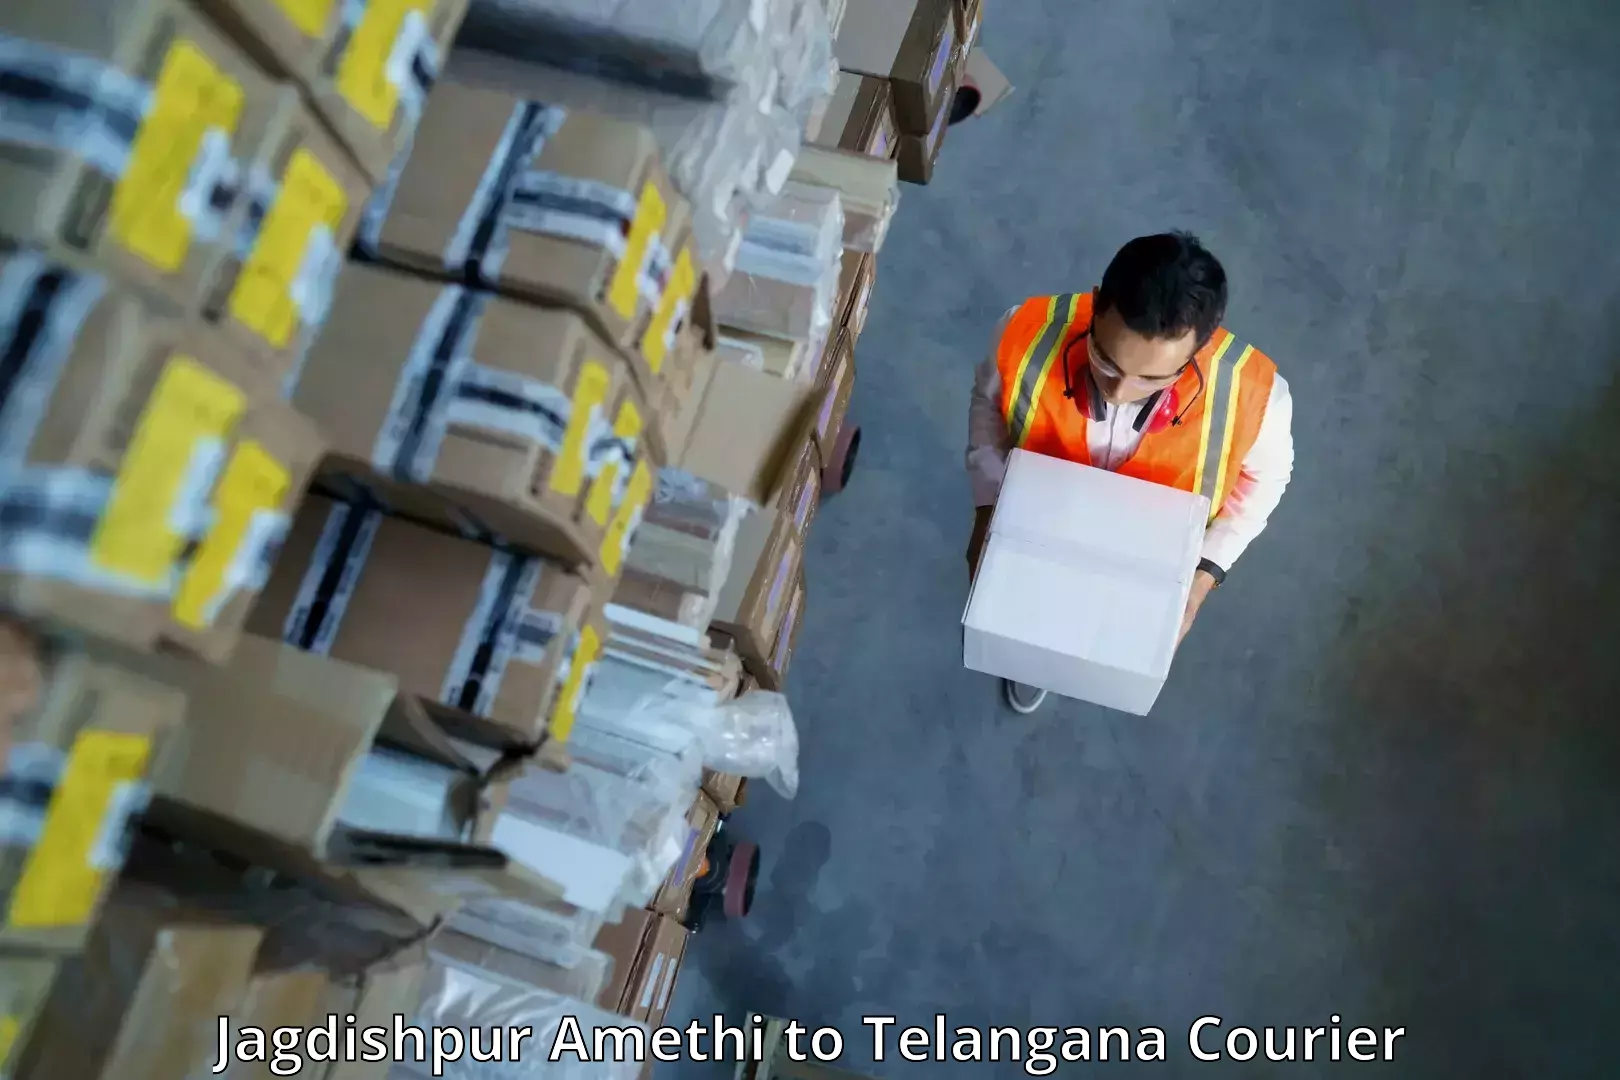 Reliable logistics providers Jagdishpur Amethi to Shankarpalle